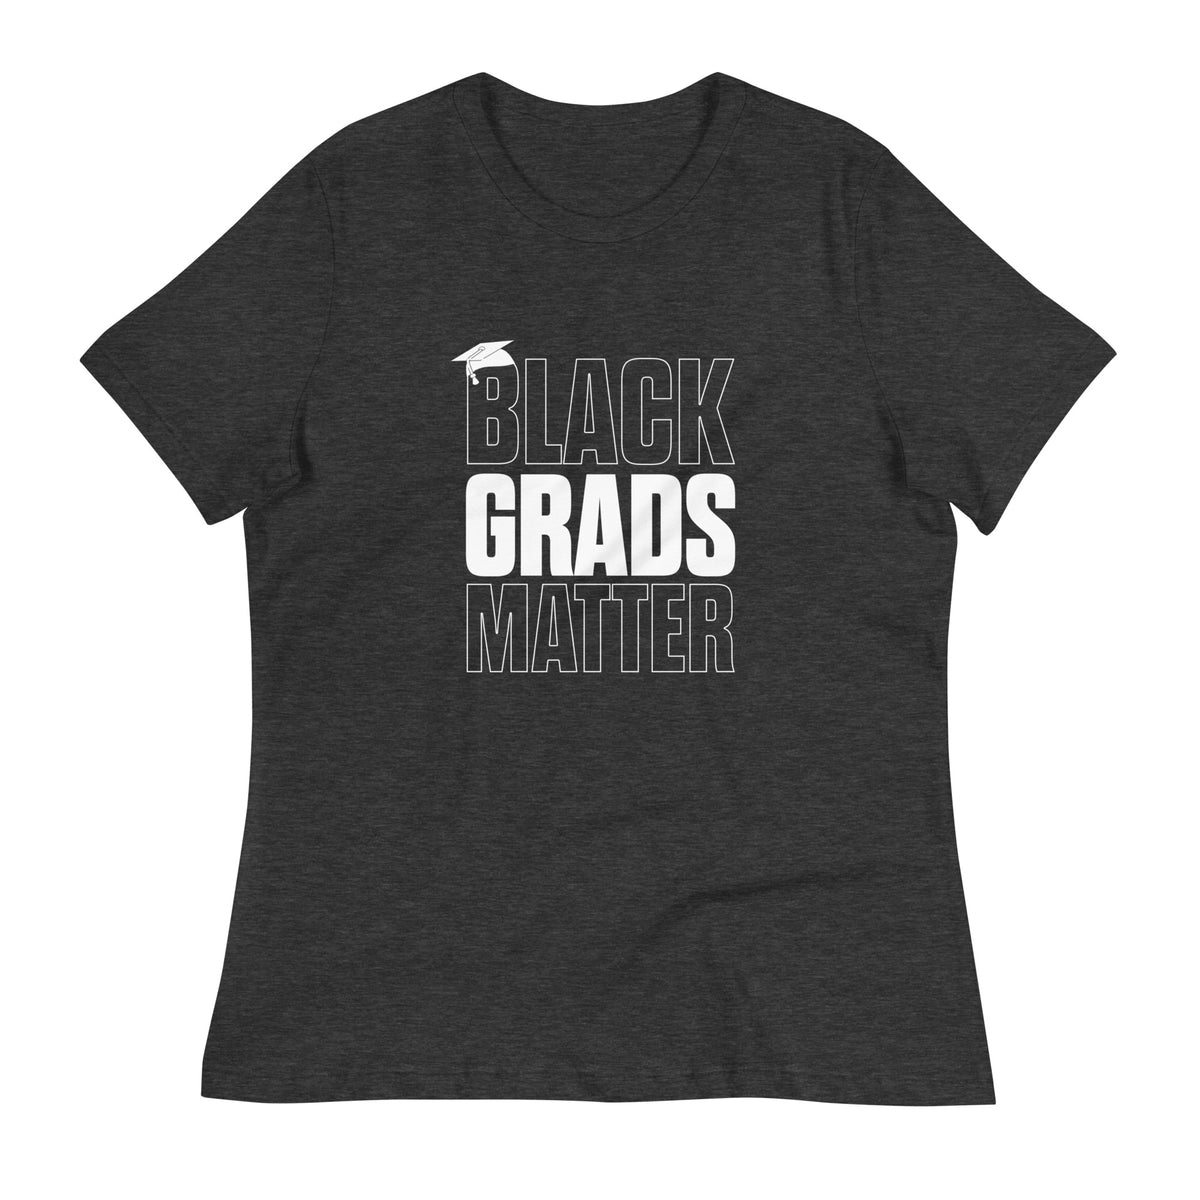 Women&#39;s Black Grads Matter T-Shirt - HBCU Buzz Shop